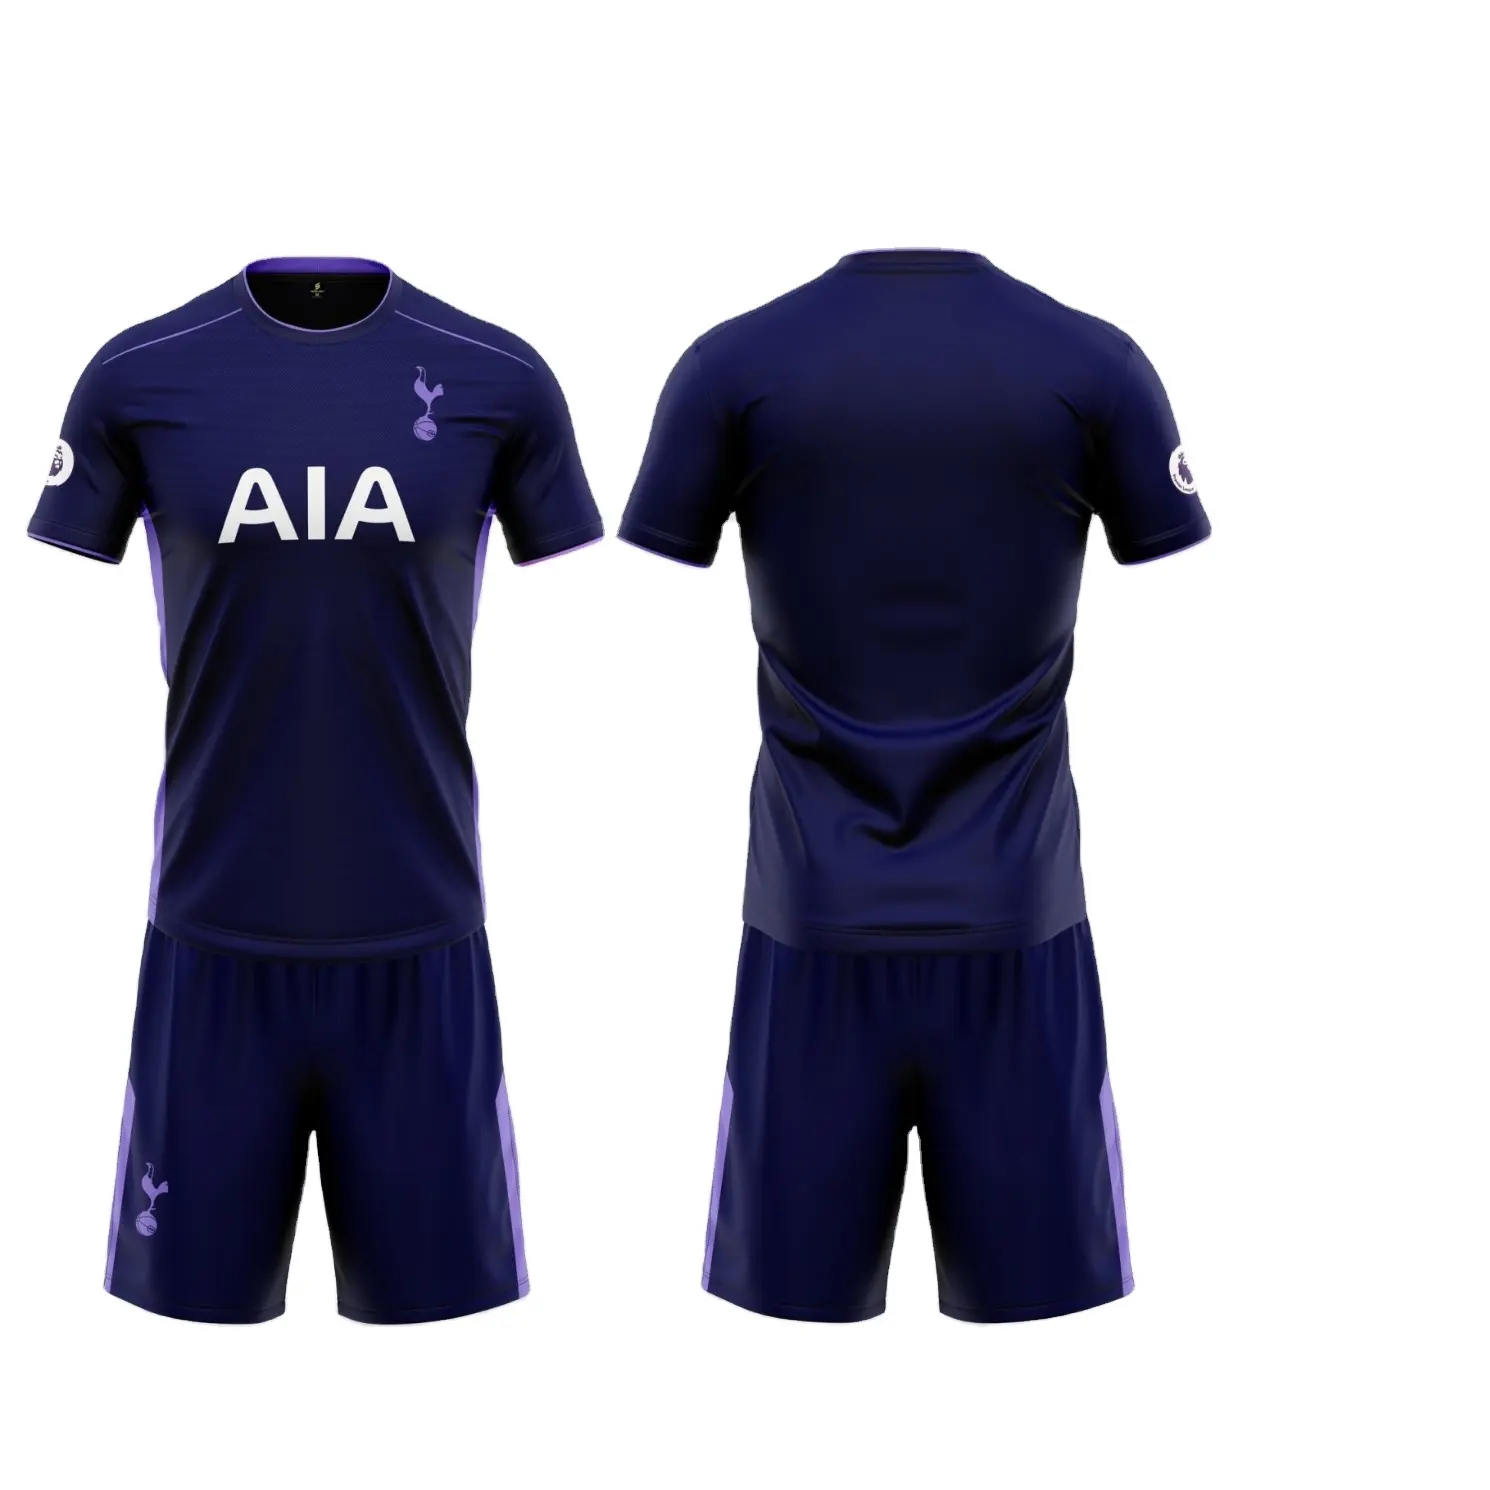 Футбольная одежда, устойчивый индивидуальный стиль, Oem-сервис, упакованный в полиэтиленовый пакет, вьетнамский производитель